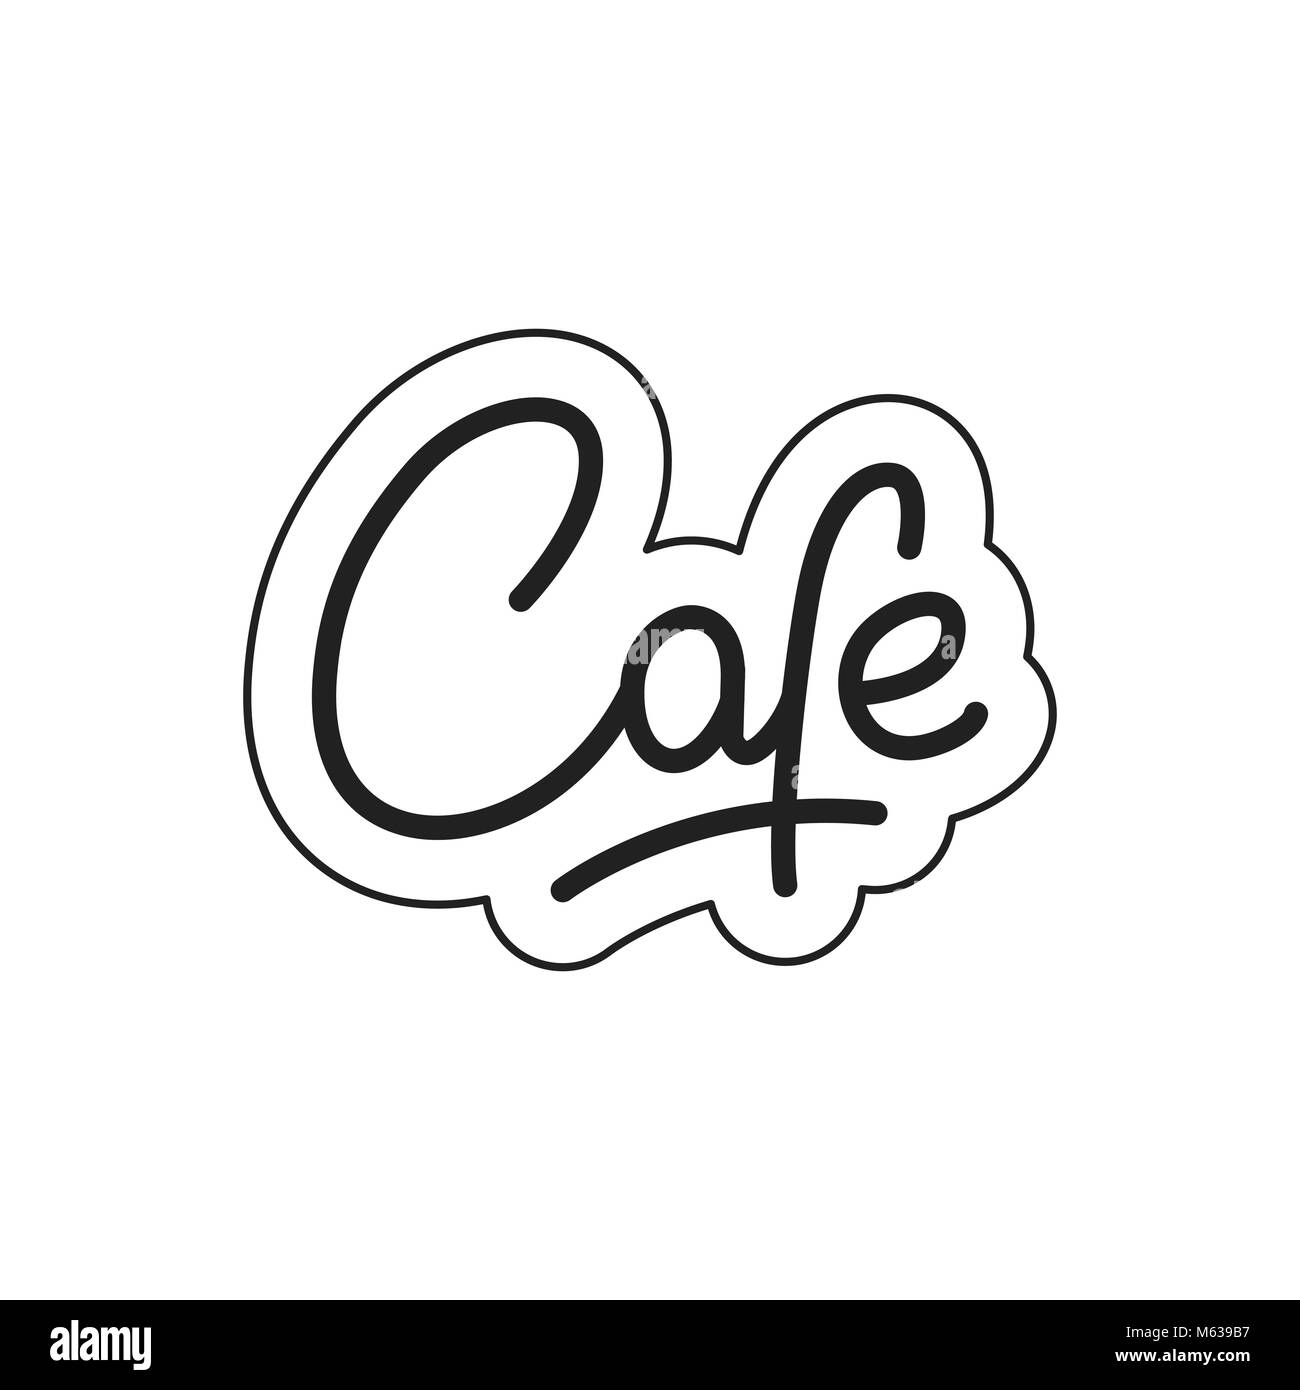 Cafe. Cafe lettering. Cafe label badge emblem sticker Stock Vector